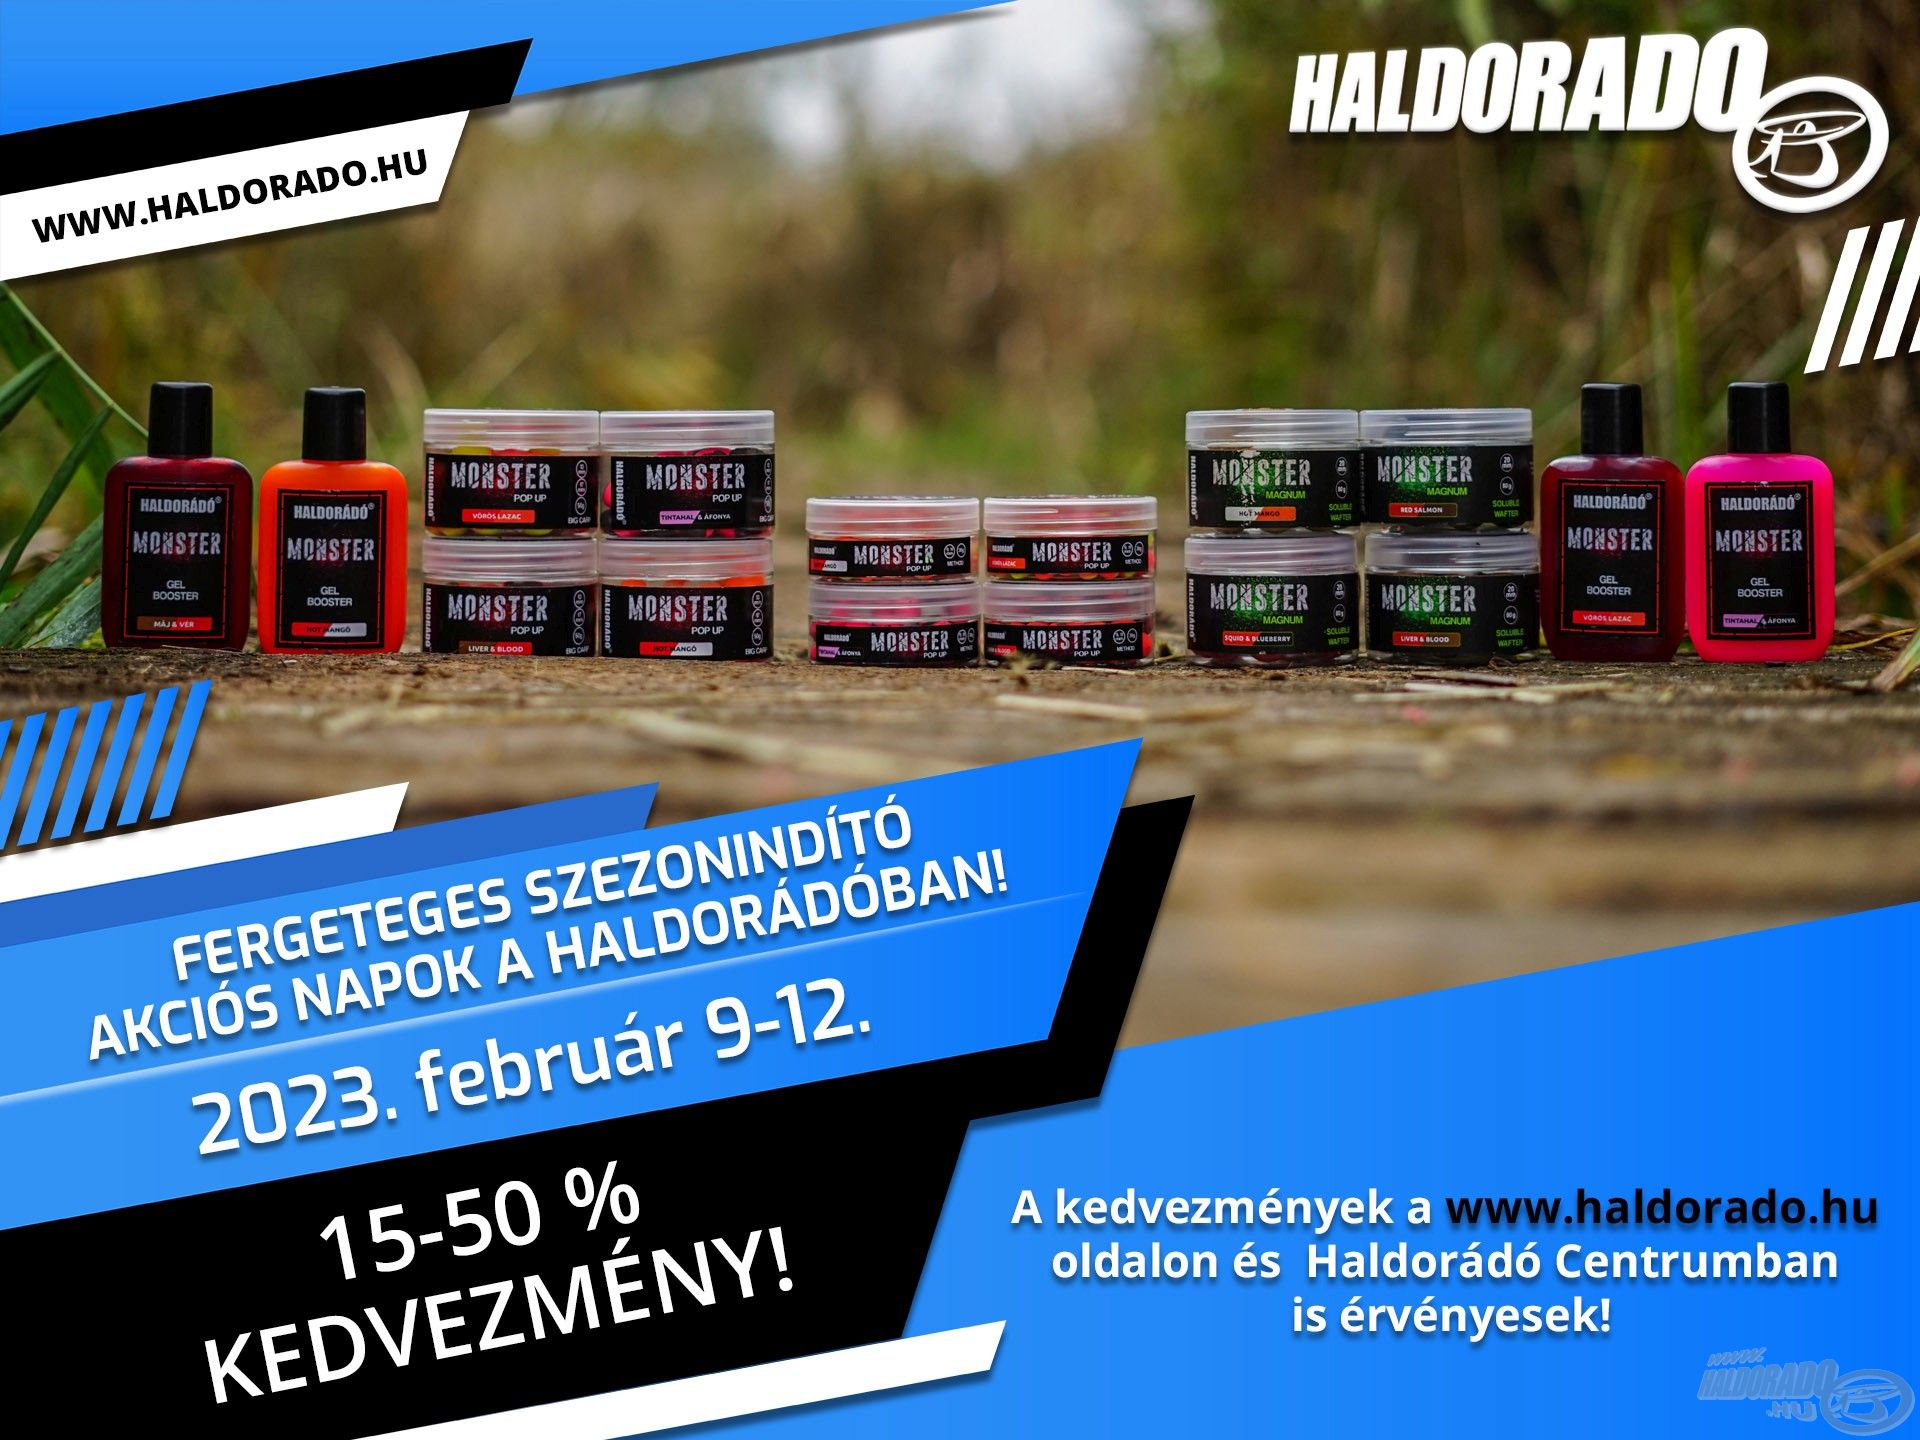 Fergeteges szezonindító akciós napok a Haldorádóban február 9-12-ig, 15-50% kedvezmény!!!